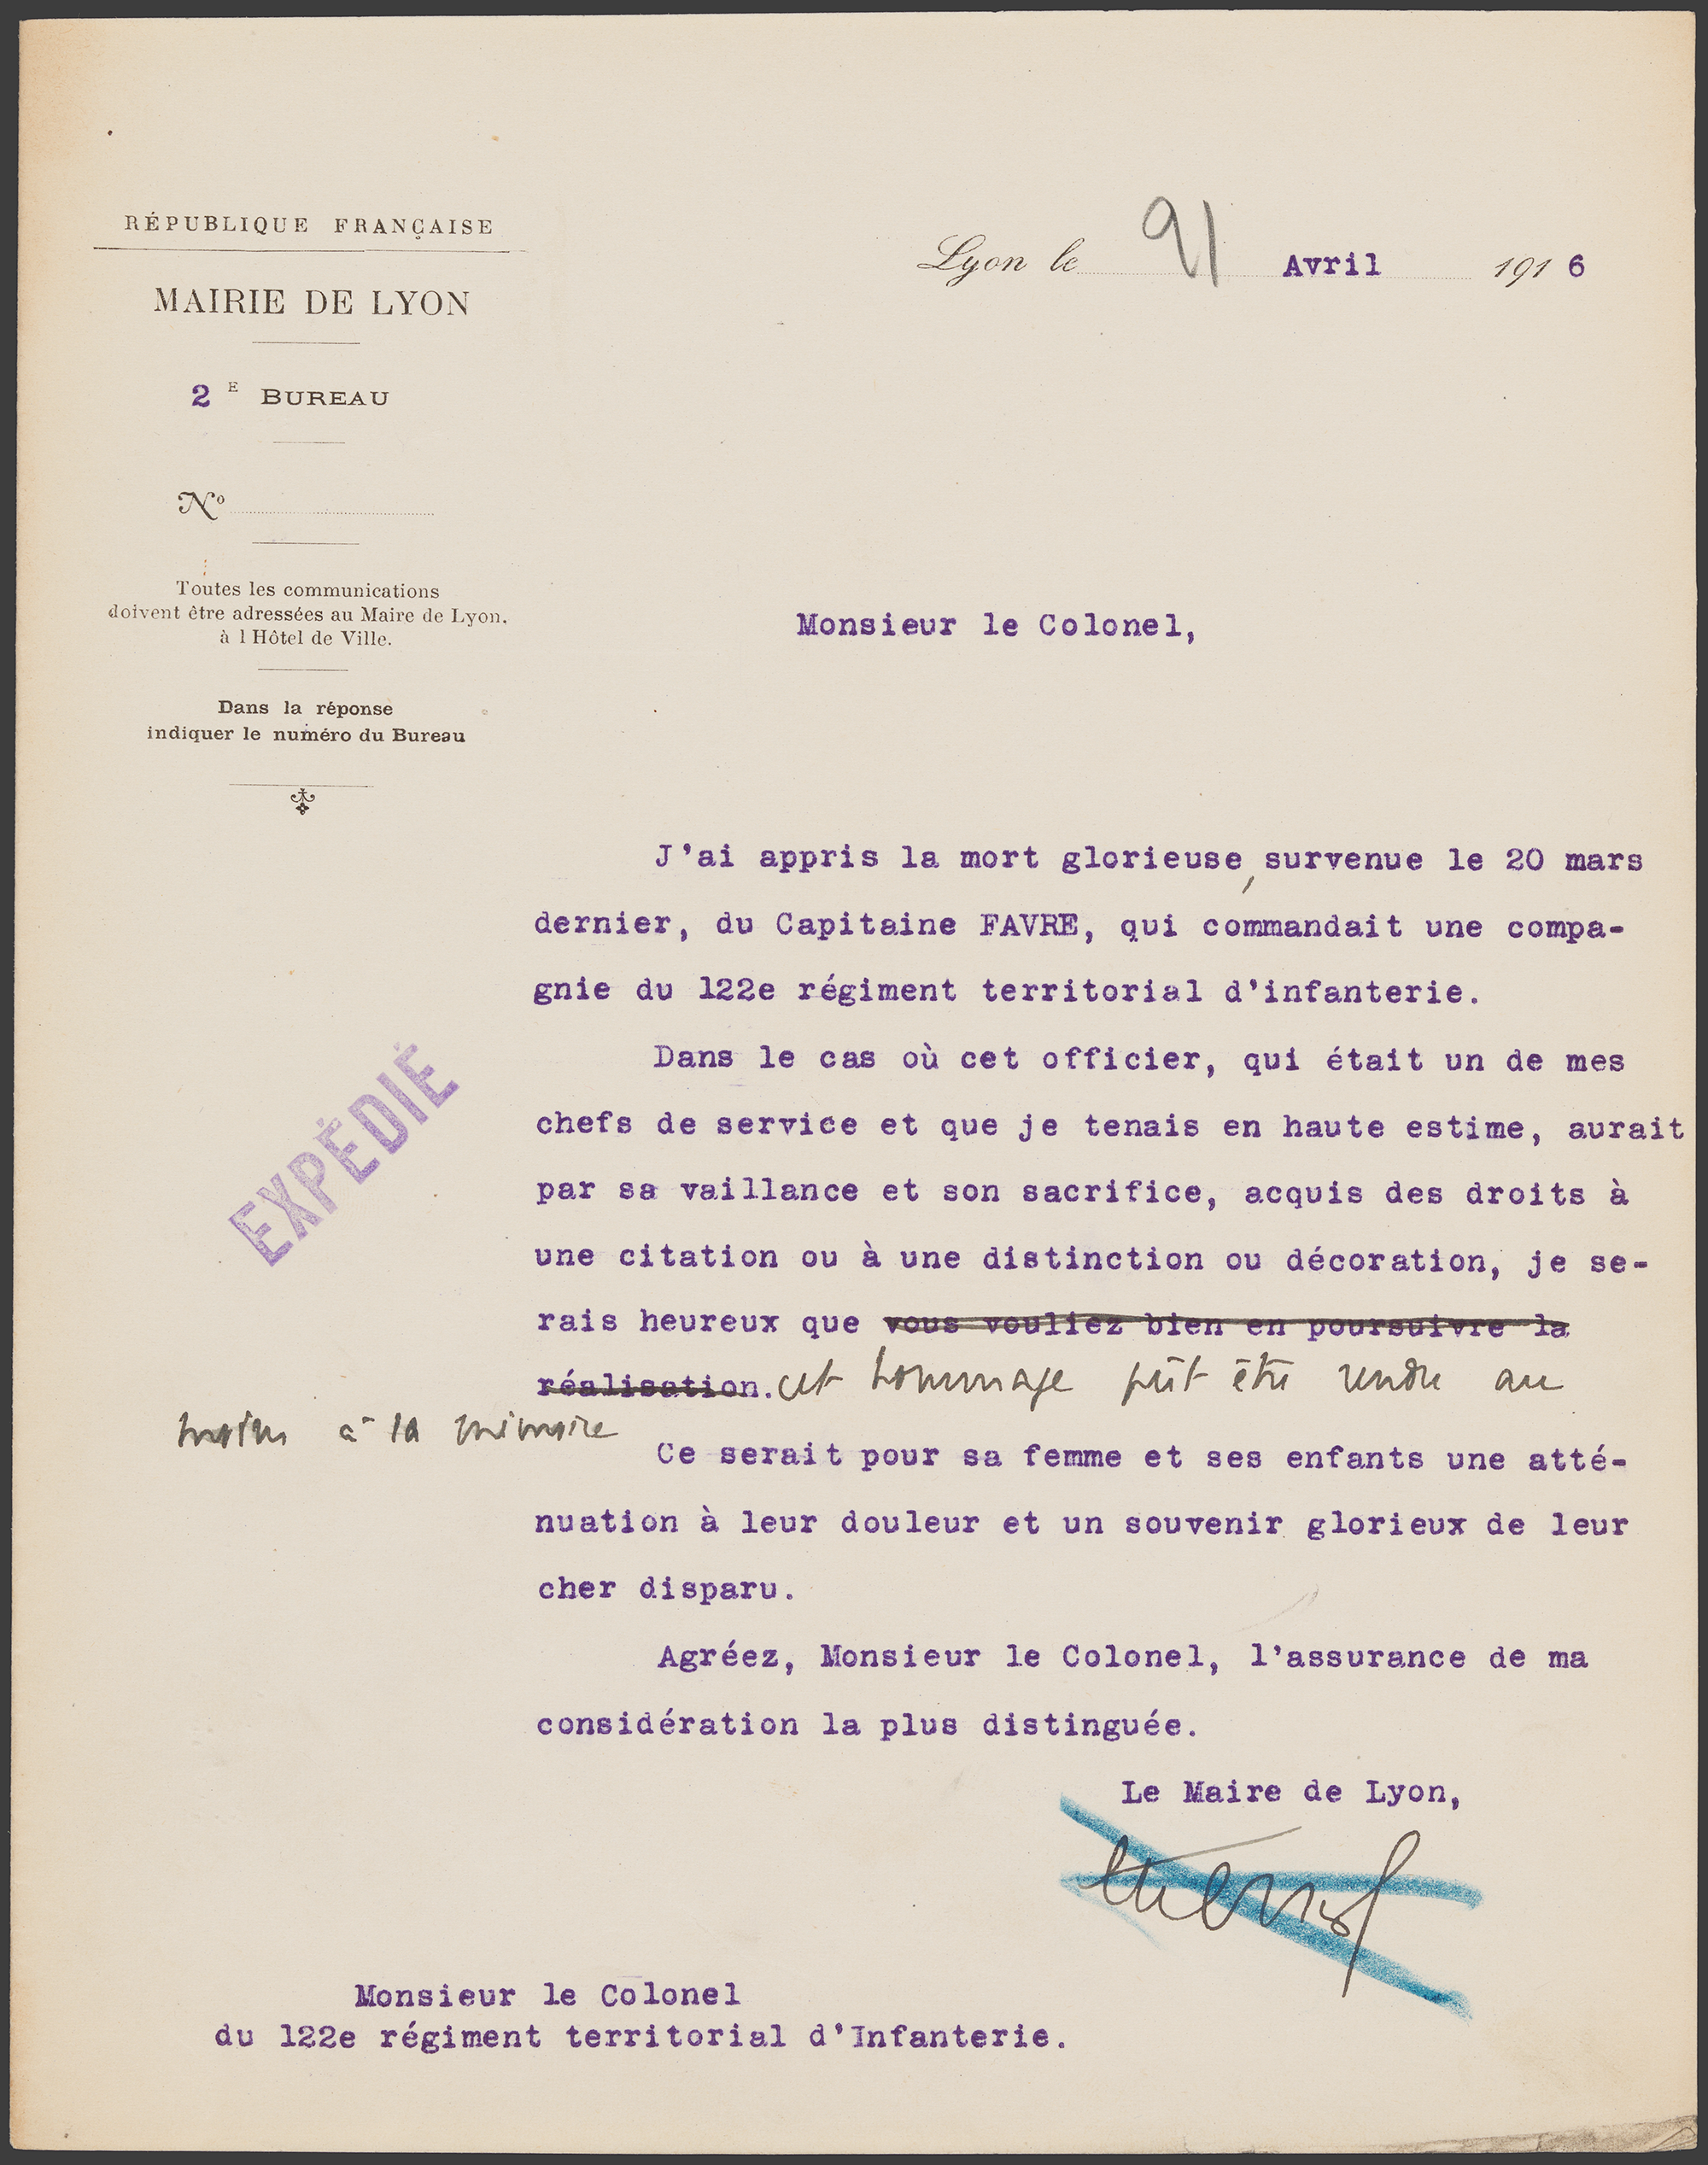 Courrier D'E. Herriot à l'administration militaire au sujet d'une citation pour Adolphe Favre, 21 avril 1916 - 524W/391